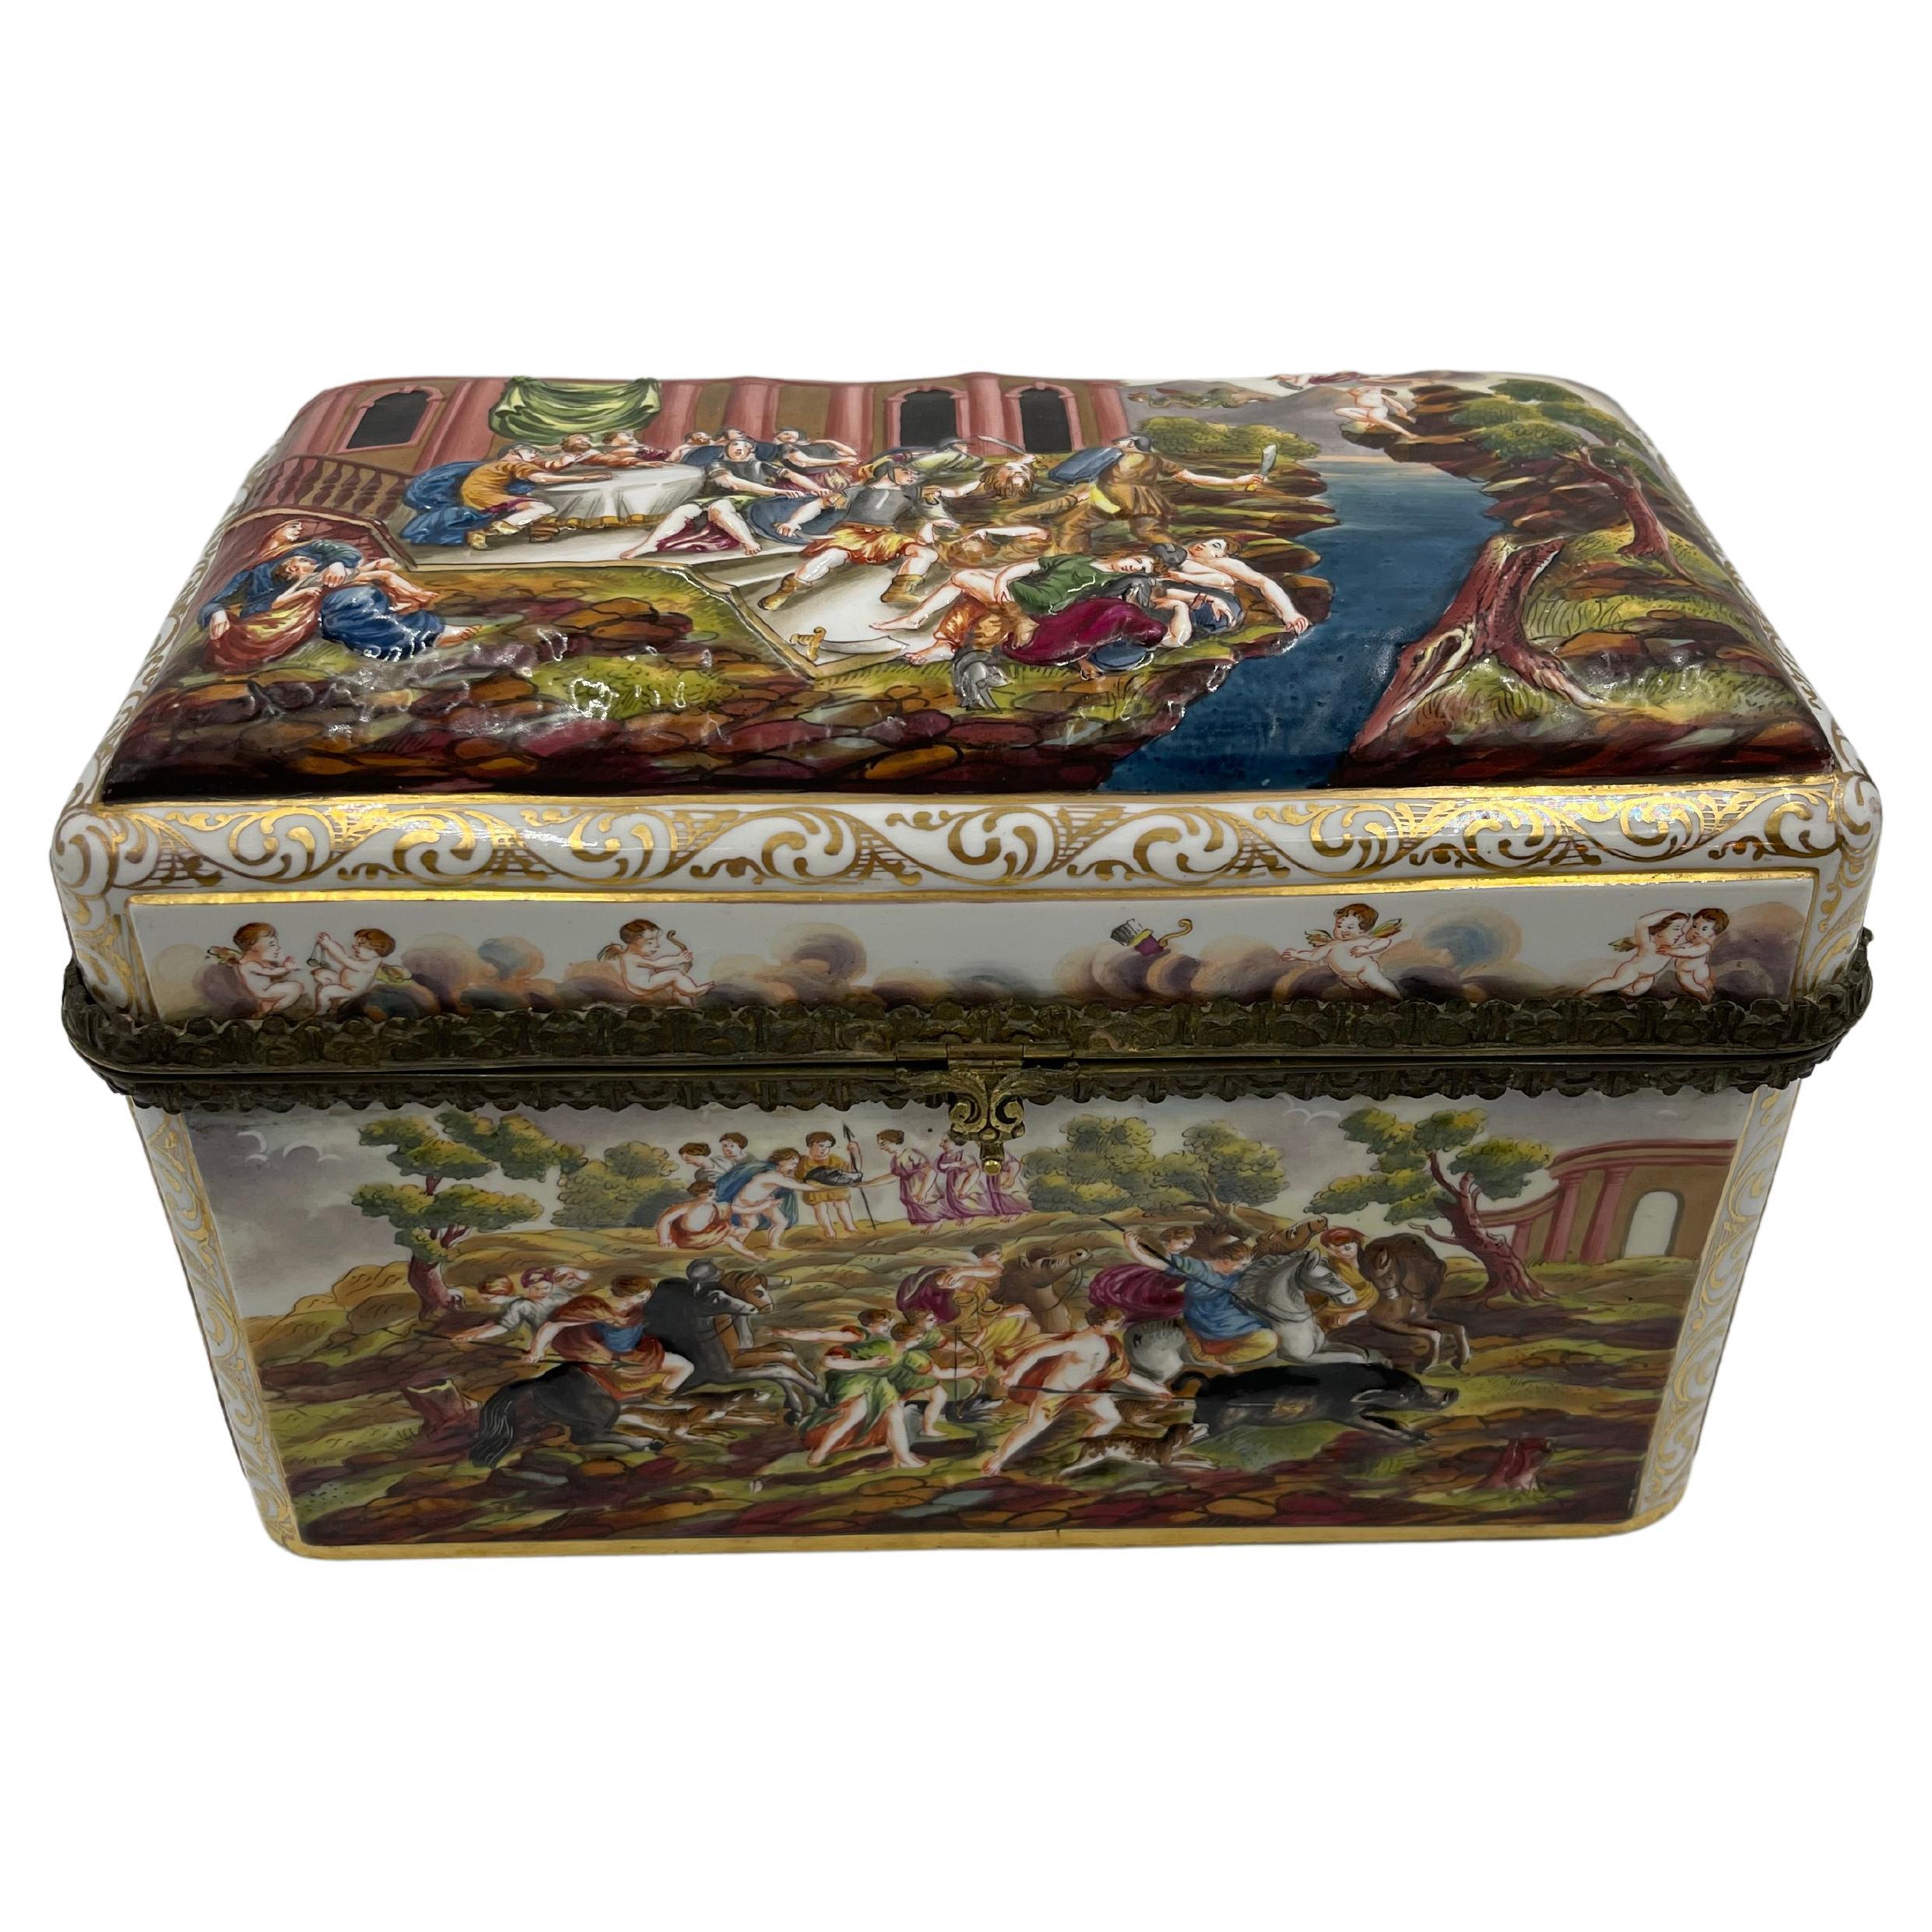 Rare Large 19th C. Capodimonte Porcelain Box / Table Casket